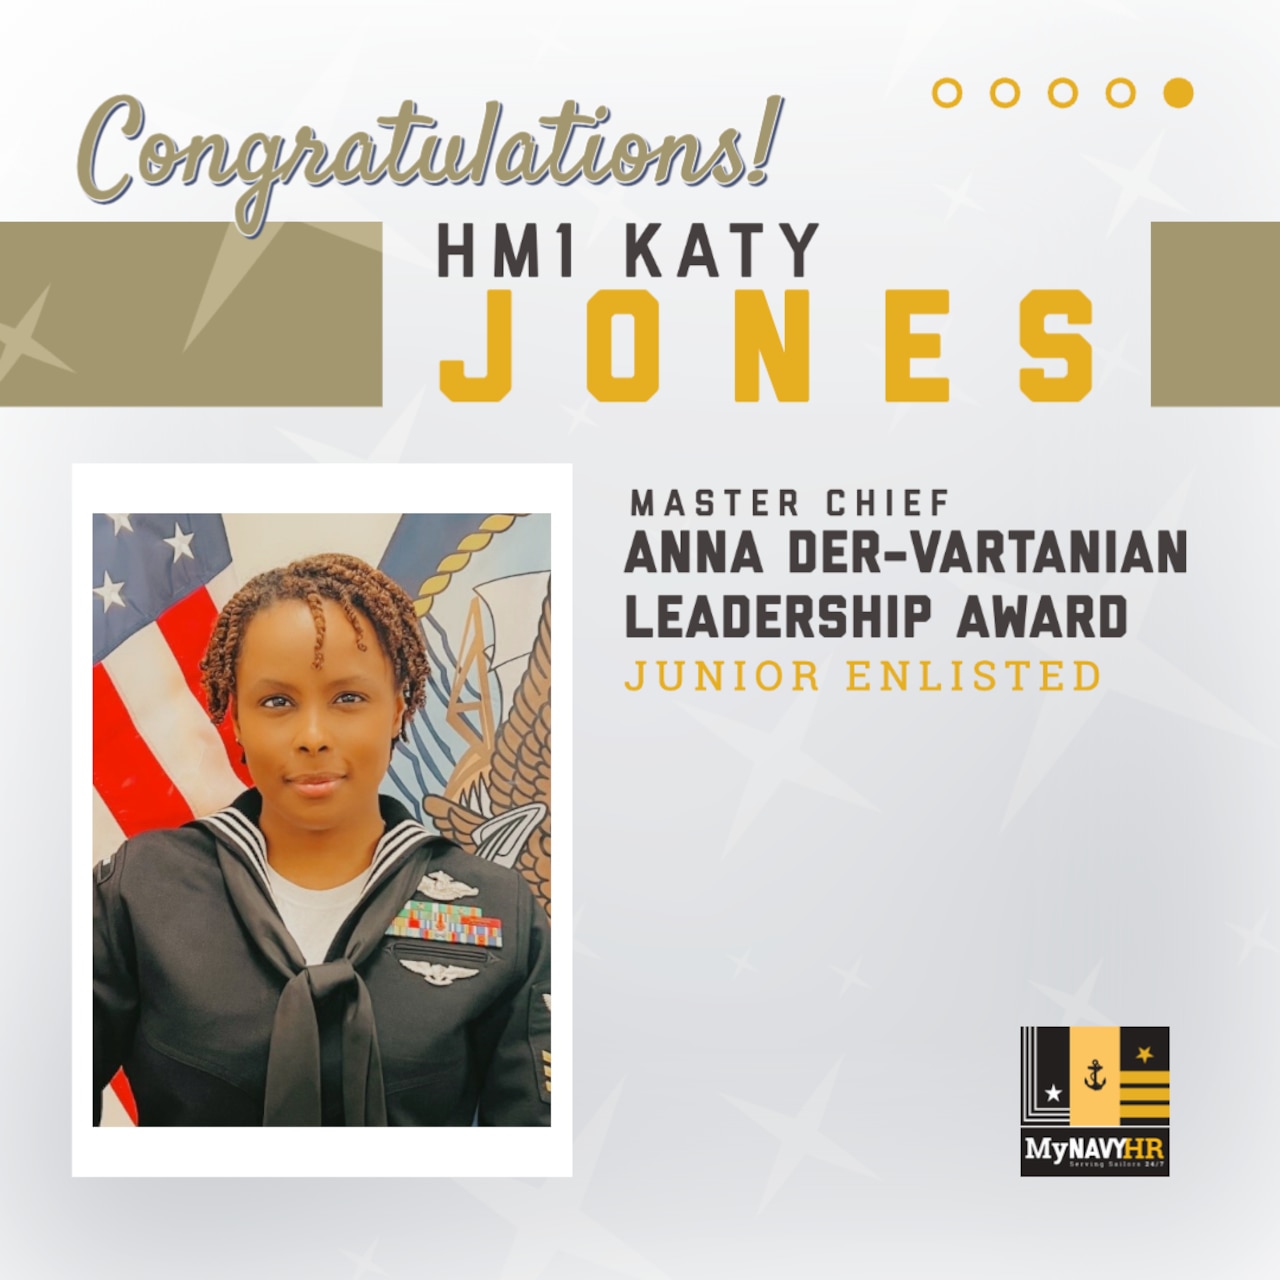 Graphic for social media highlighting the Master Chief Anna Der-Vartanian Leadership Award Winner, Junior Enlisted Category - HM1 Katy Jones